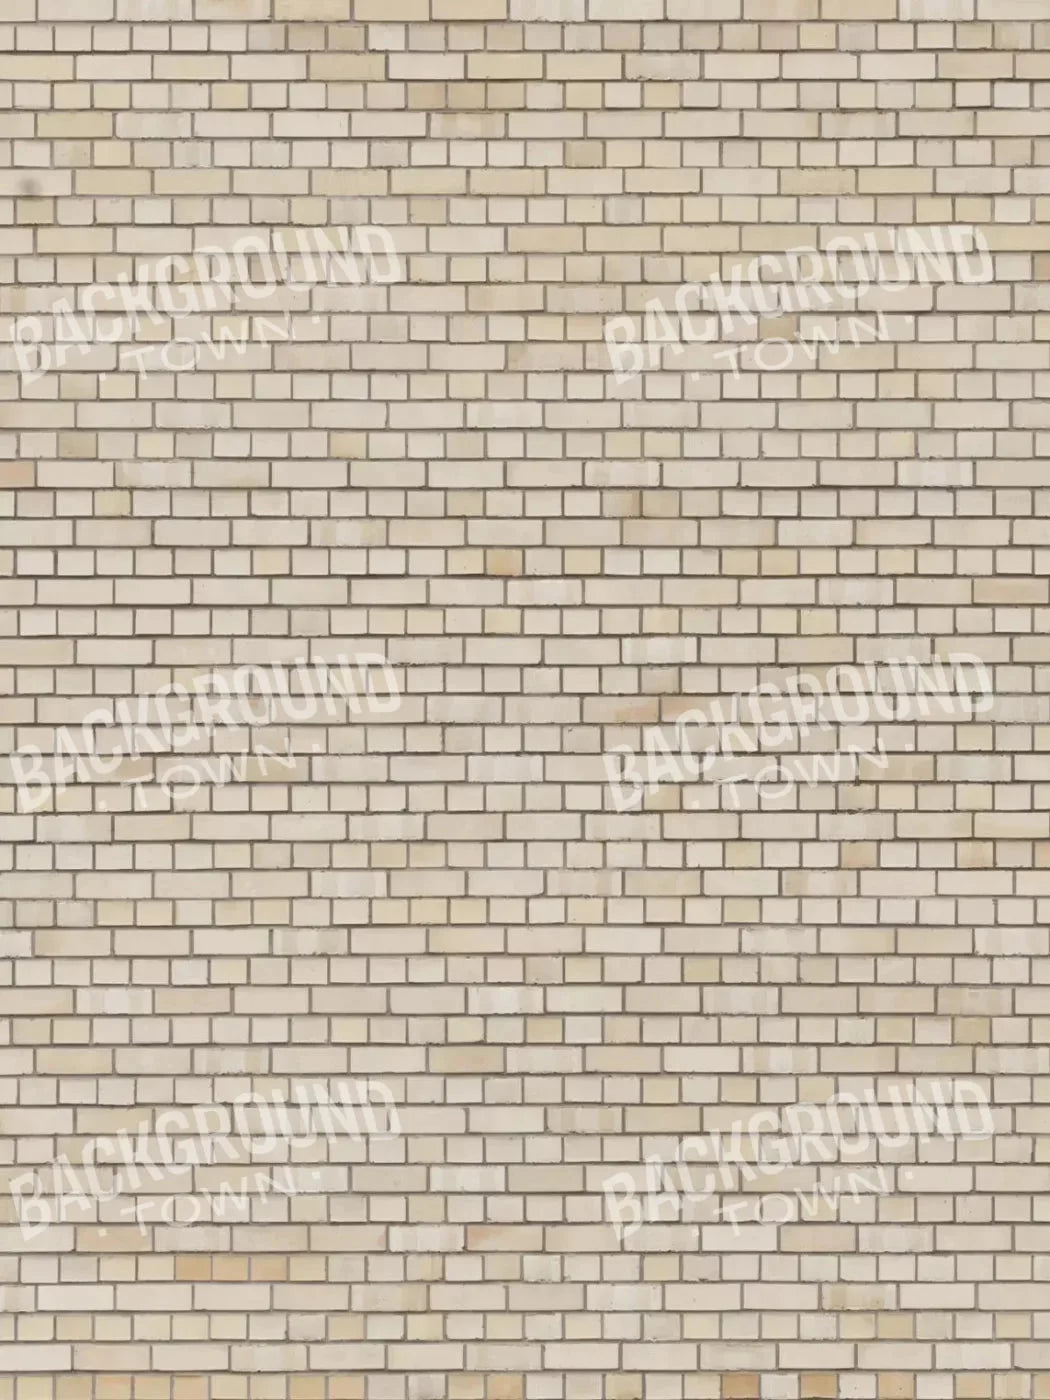 Brickwork Rubbermat Floor 5X7 ( 60 X 84 Inch )